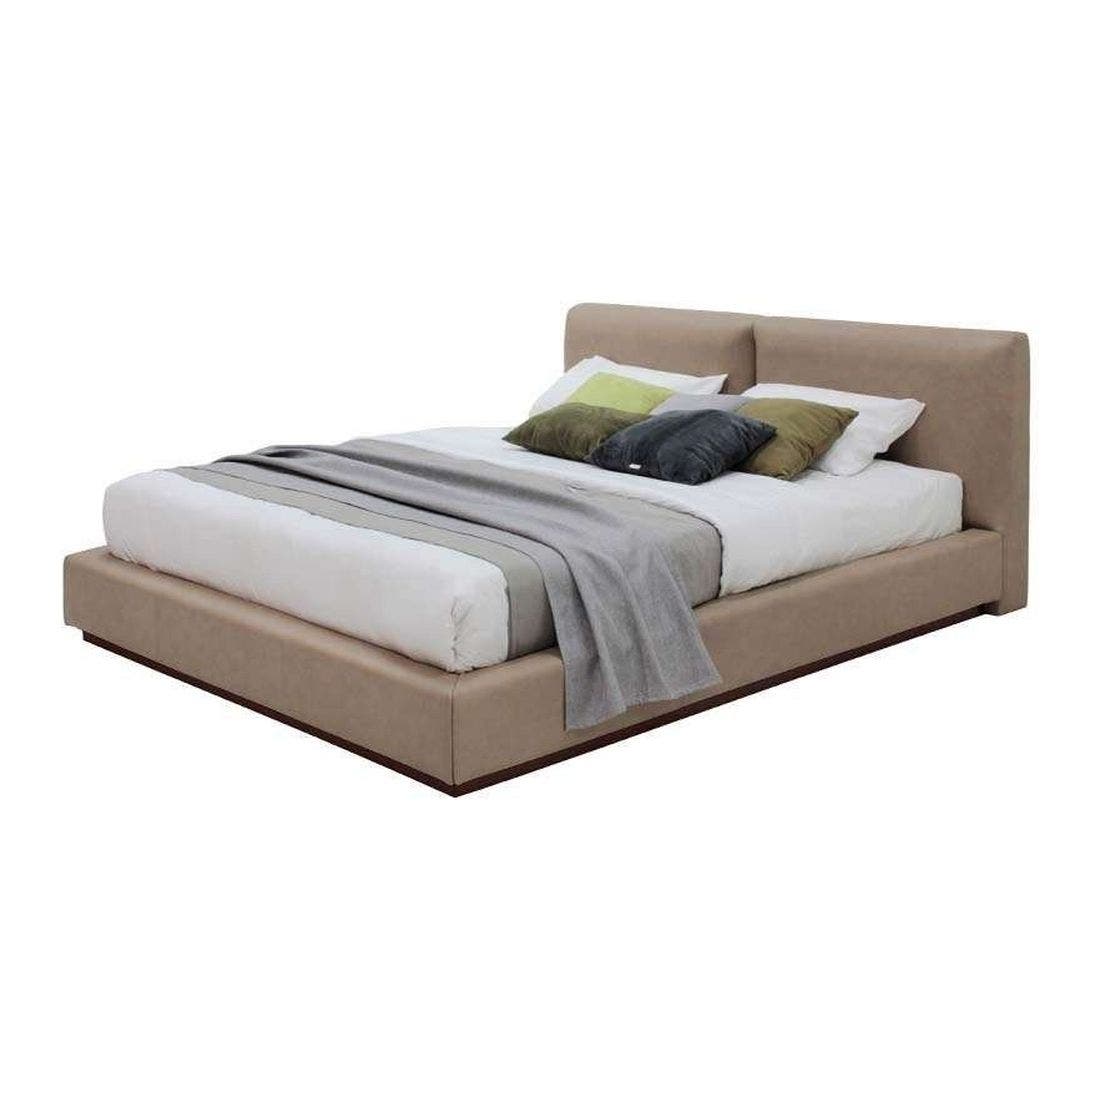 ชุดห้องนอน เตียง รุ่น Finetti สีสีน้ำตาล-SB Design Square